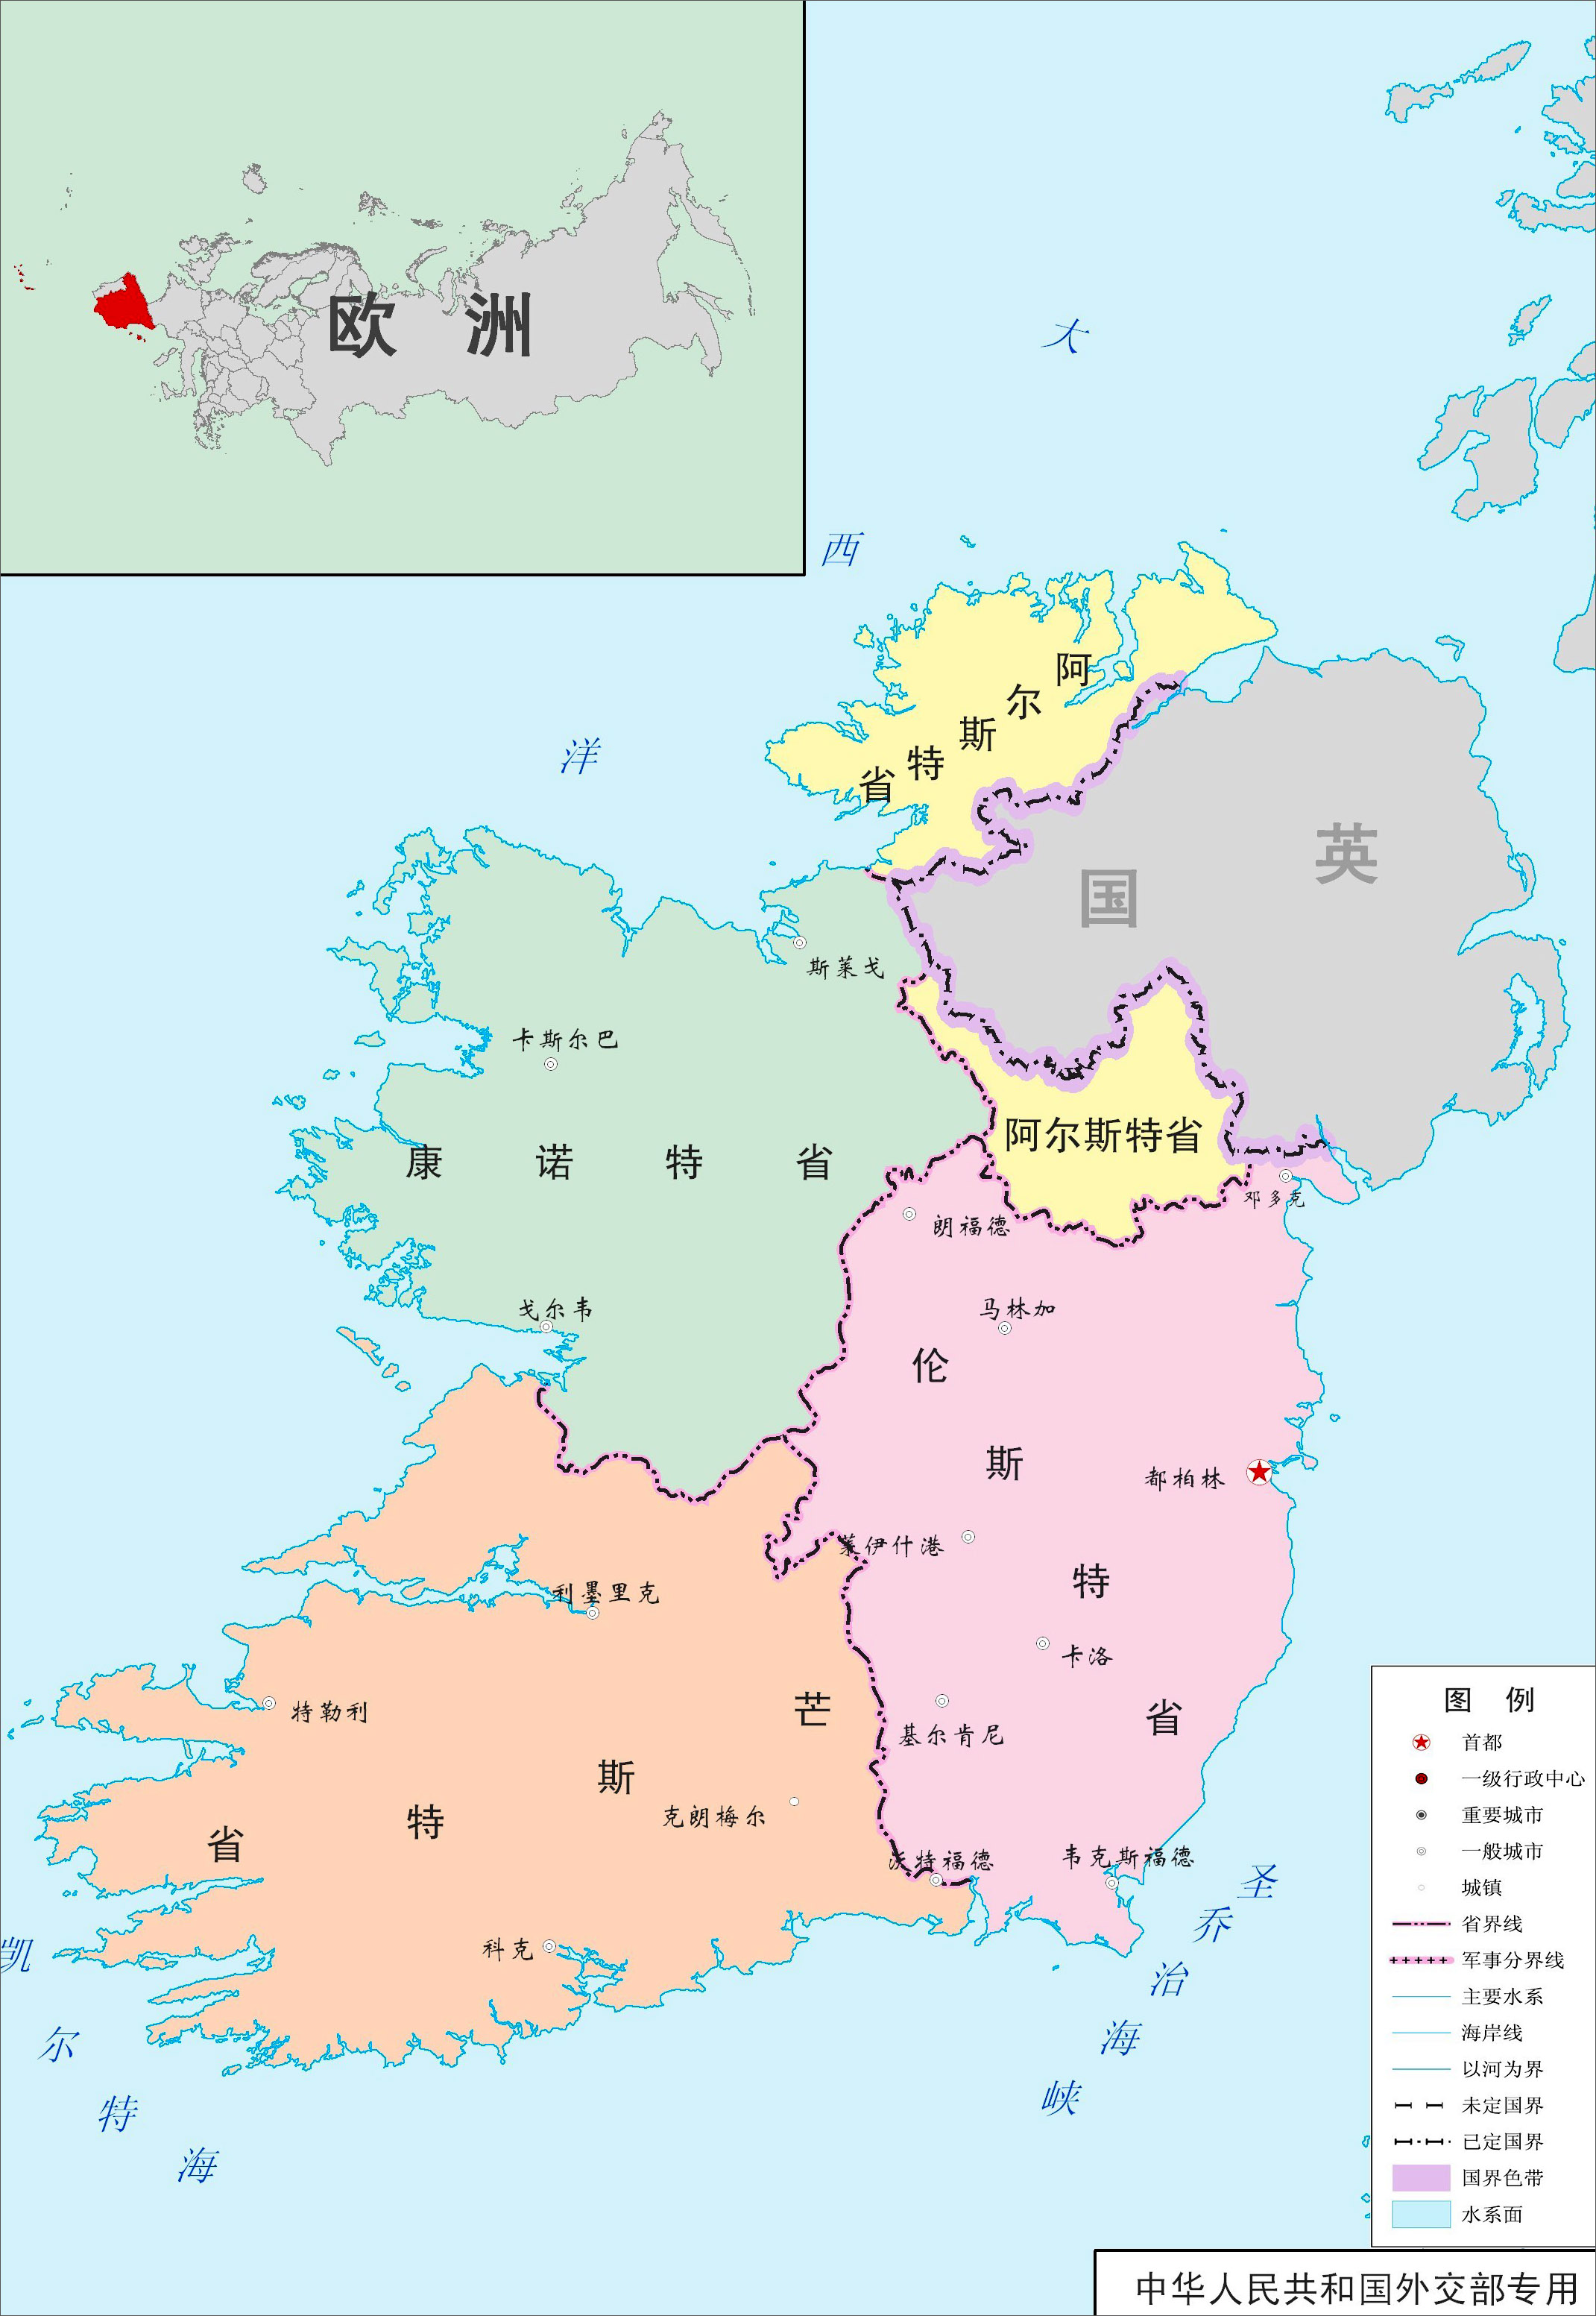 从上面地图中可以看出,爱尔兰全国只有4个省,其中还有一个省的形状很